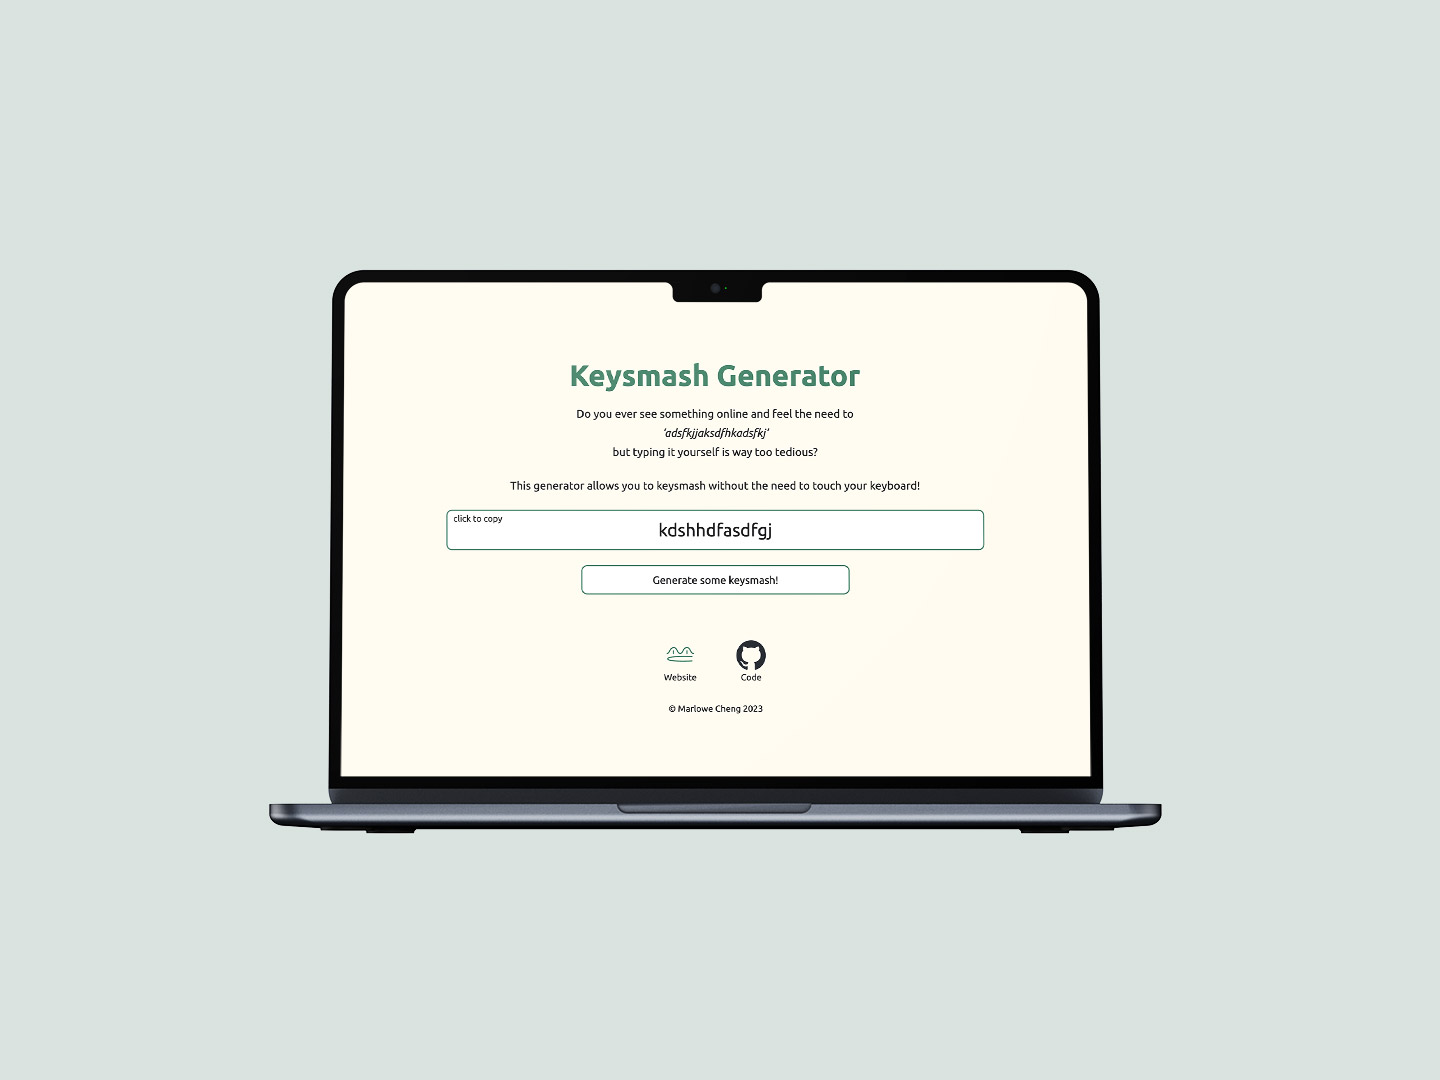 Keysmash Generator mocked-up on a laptop